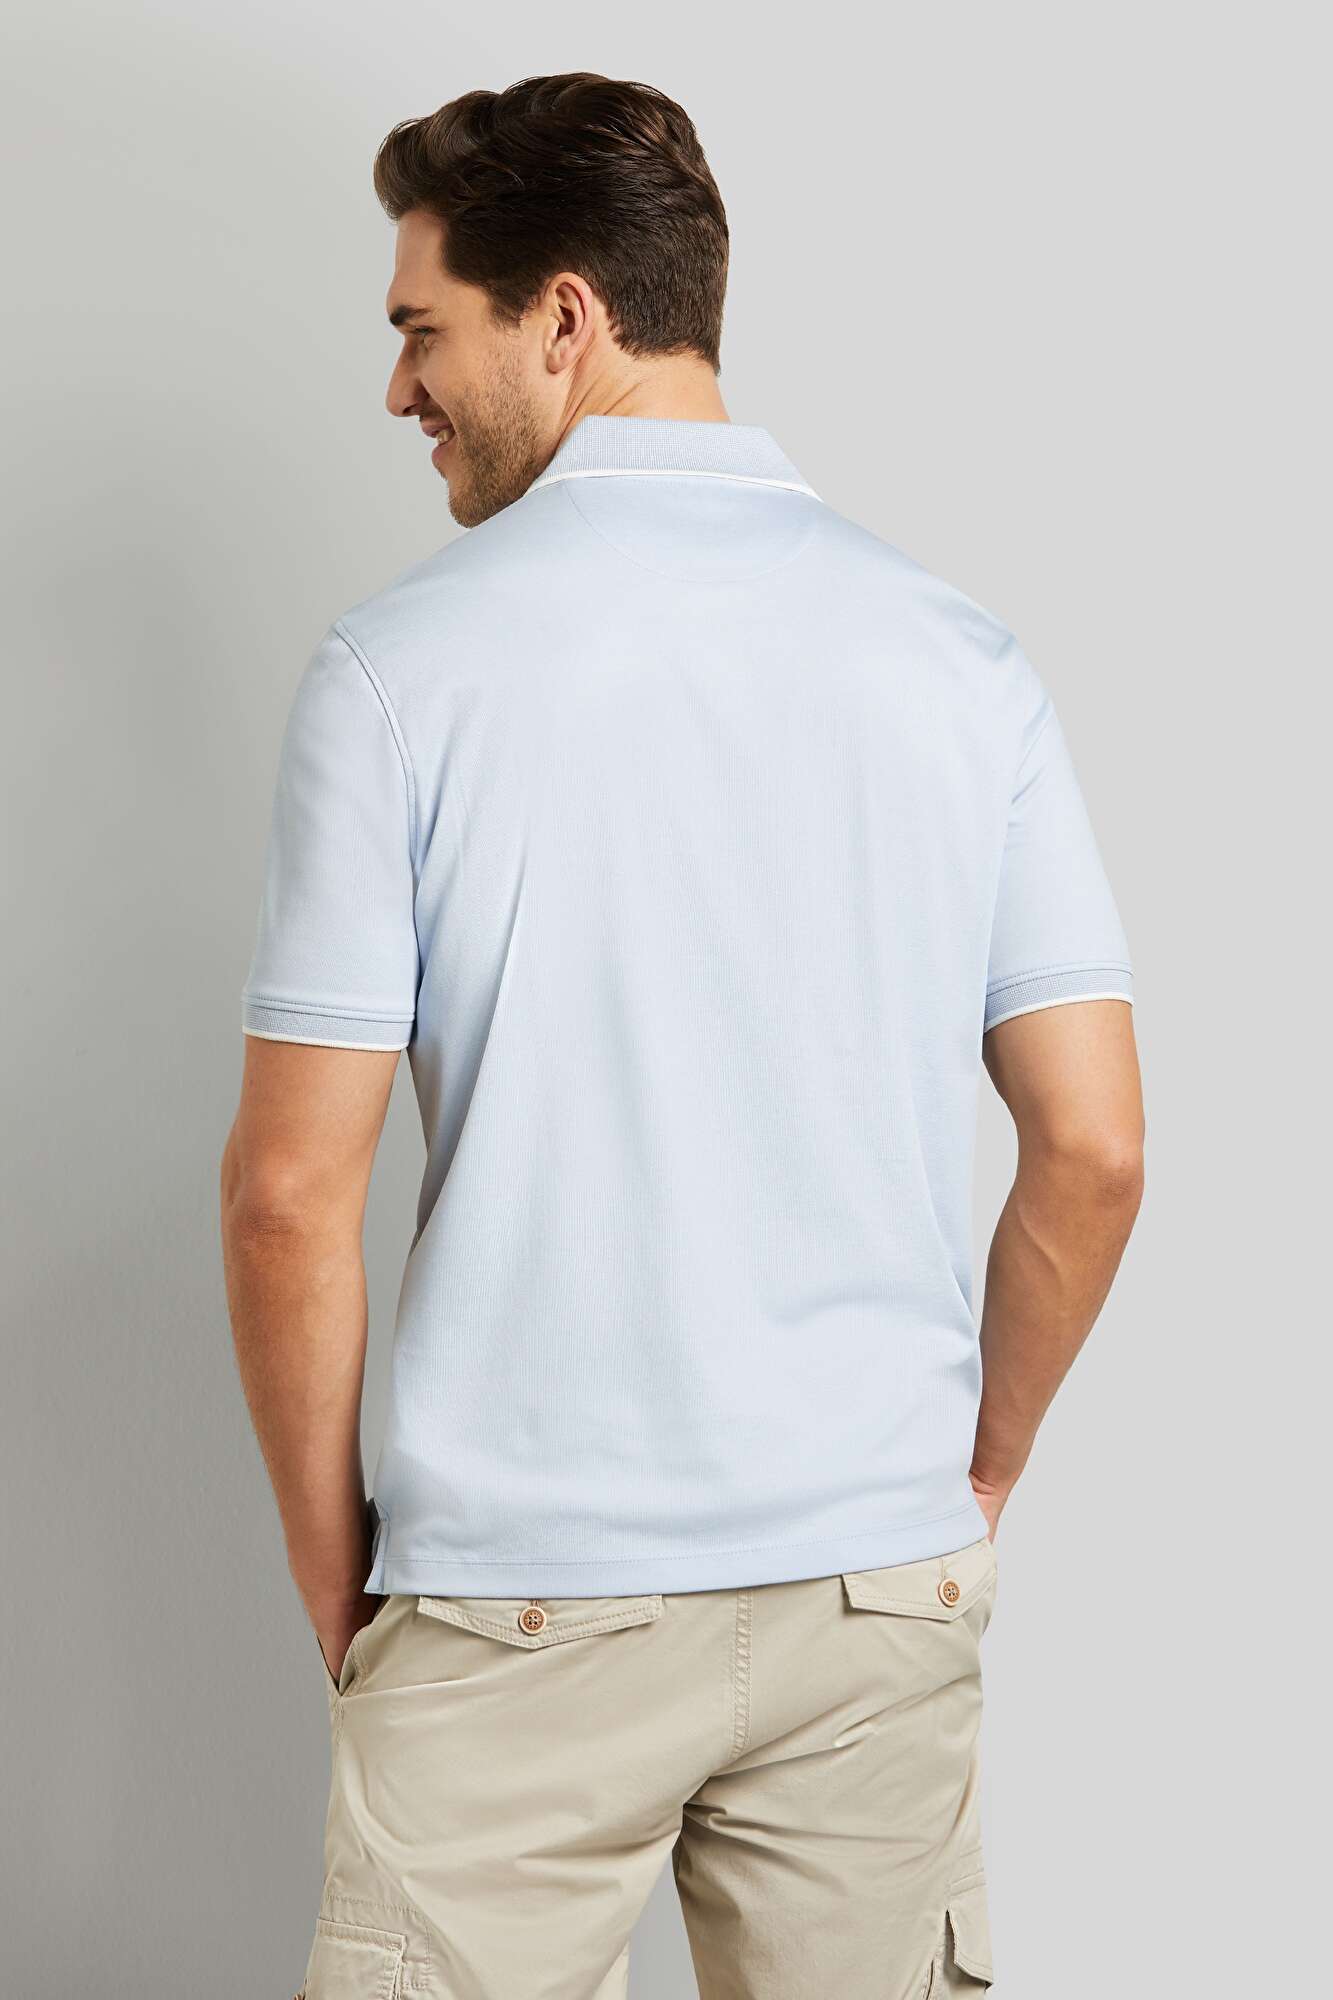 hellblau mit abgesetzten in farblich Details bugatti | Poloshirt